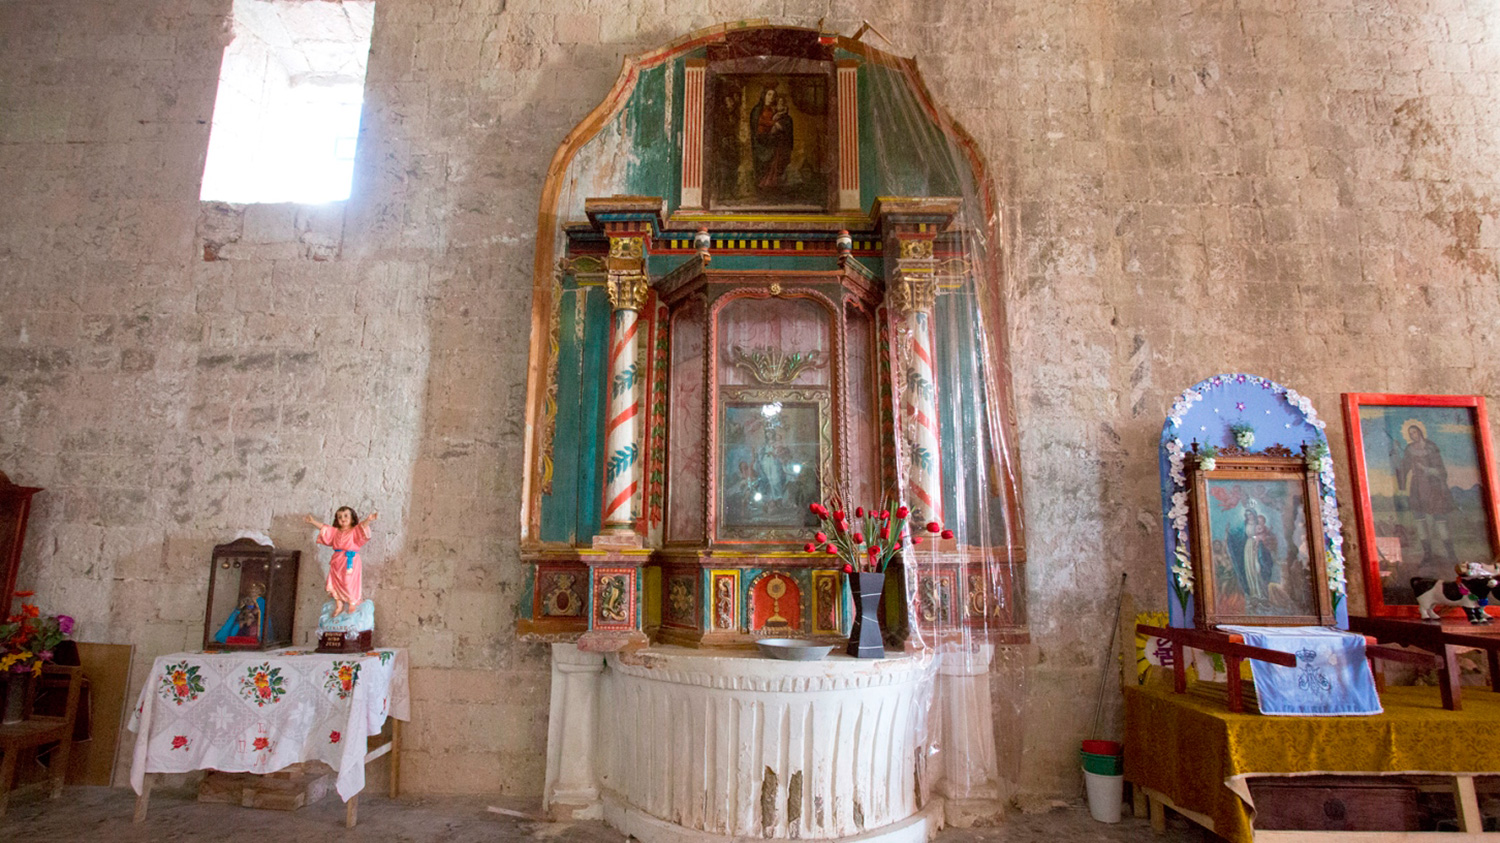 100 por ciento terminada la restauración de retablo lateral y pintura de la Virgen de la Luz, del templo de San Juan Teposcolula, Oaxaca